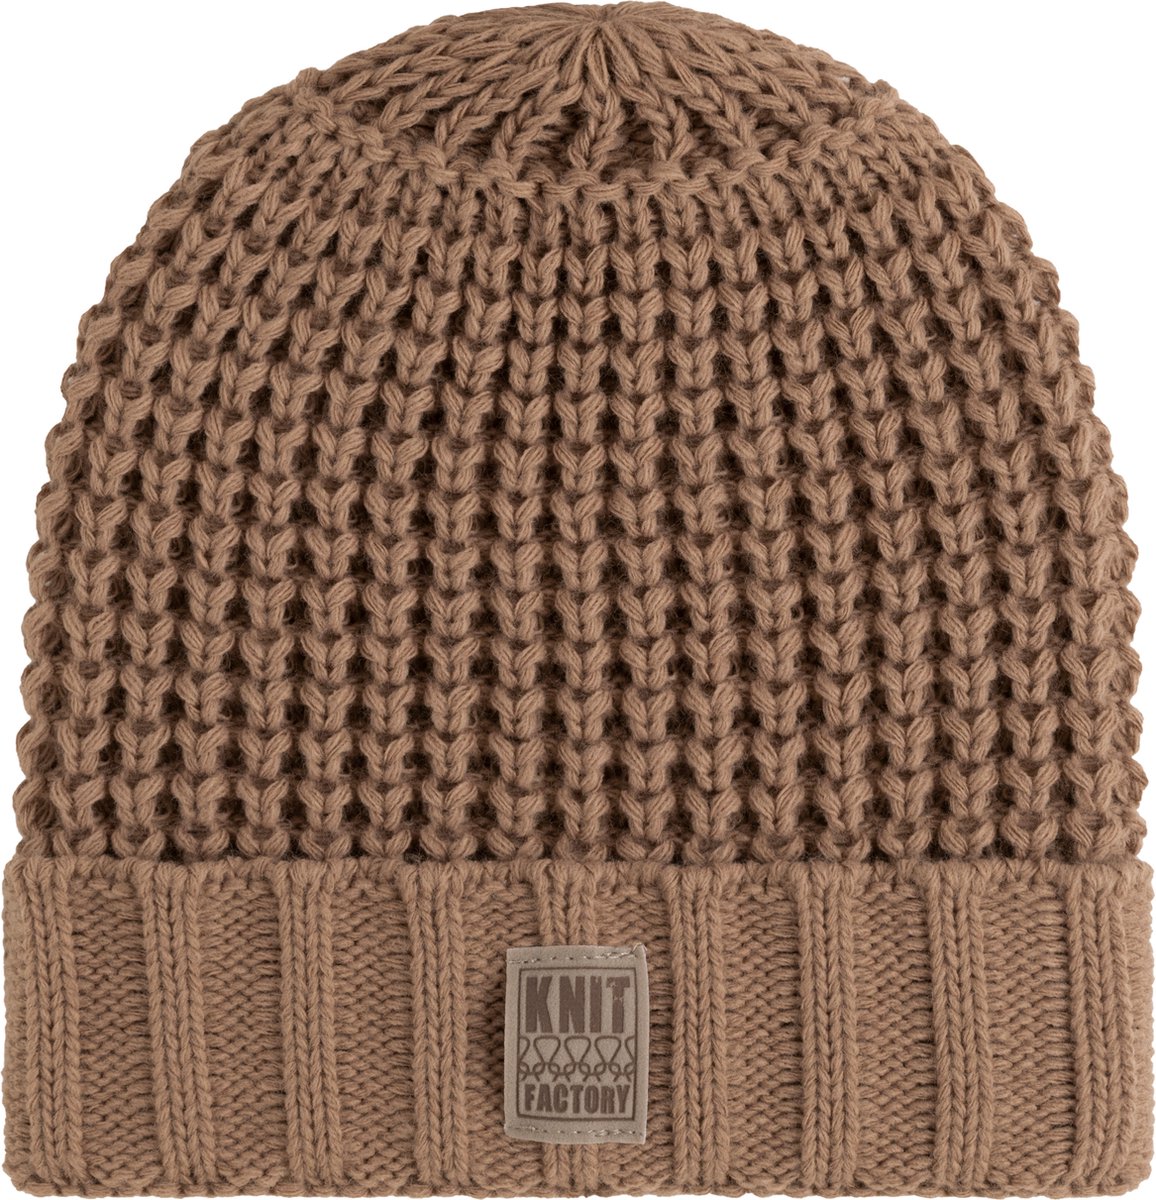 Knit Factory Robin Gebreide Muts Heren & Dames - Beanie hat - Nude - Grofgebreid - Warme bruine Wintermuts - Unisex - One Size